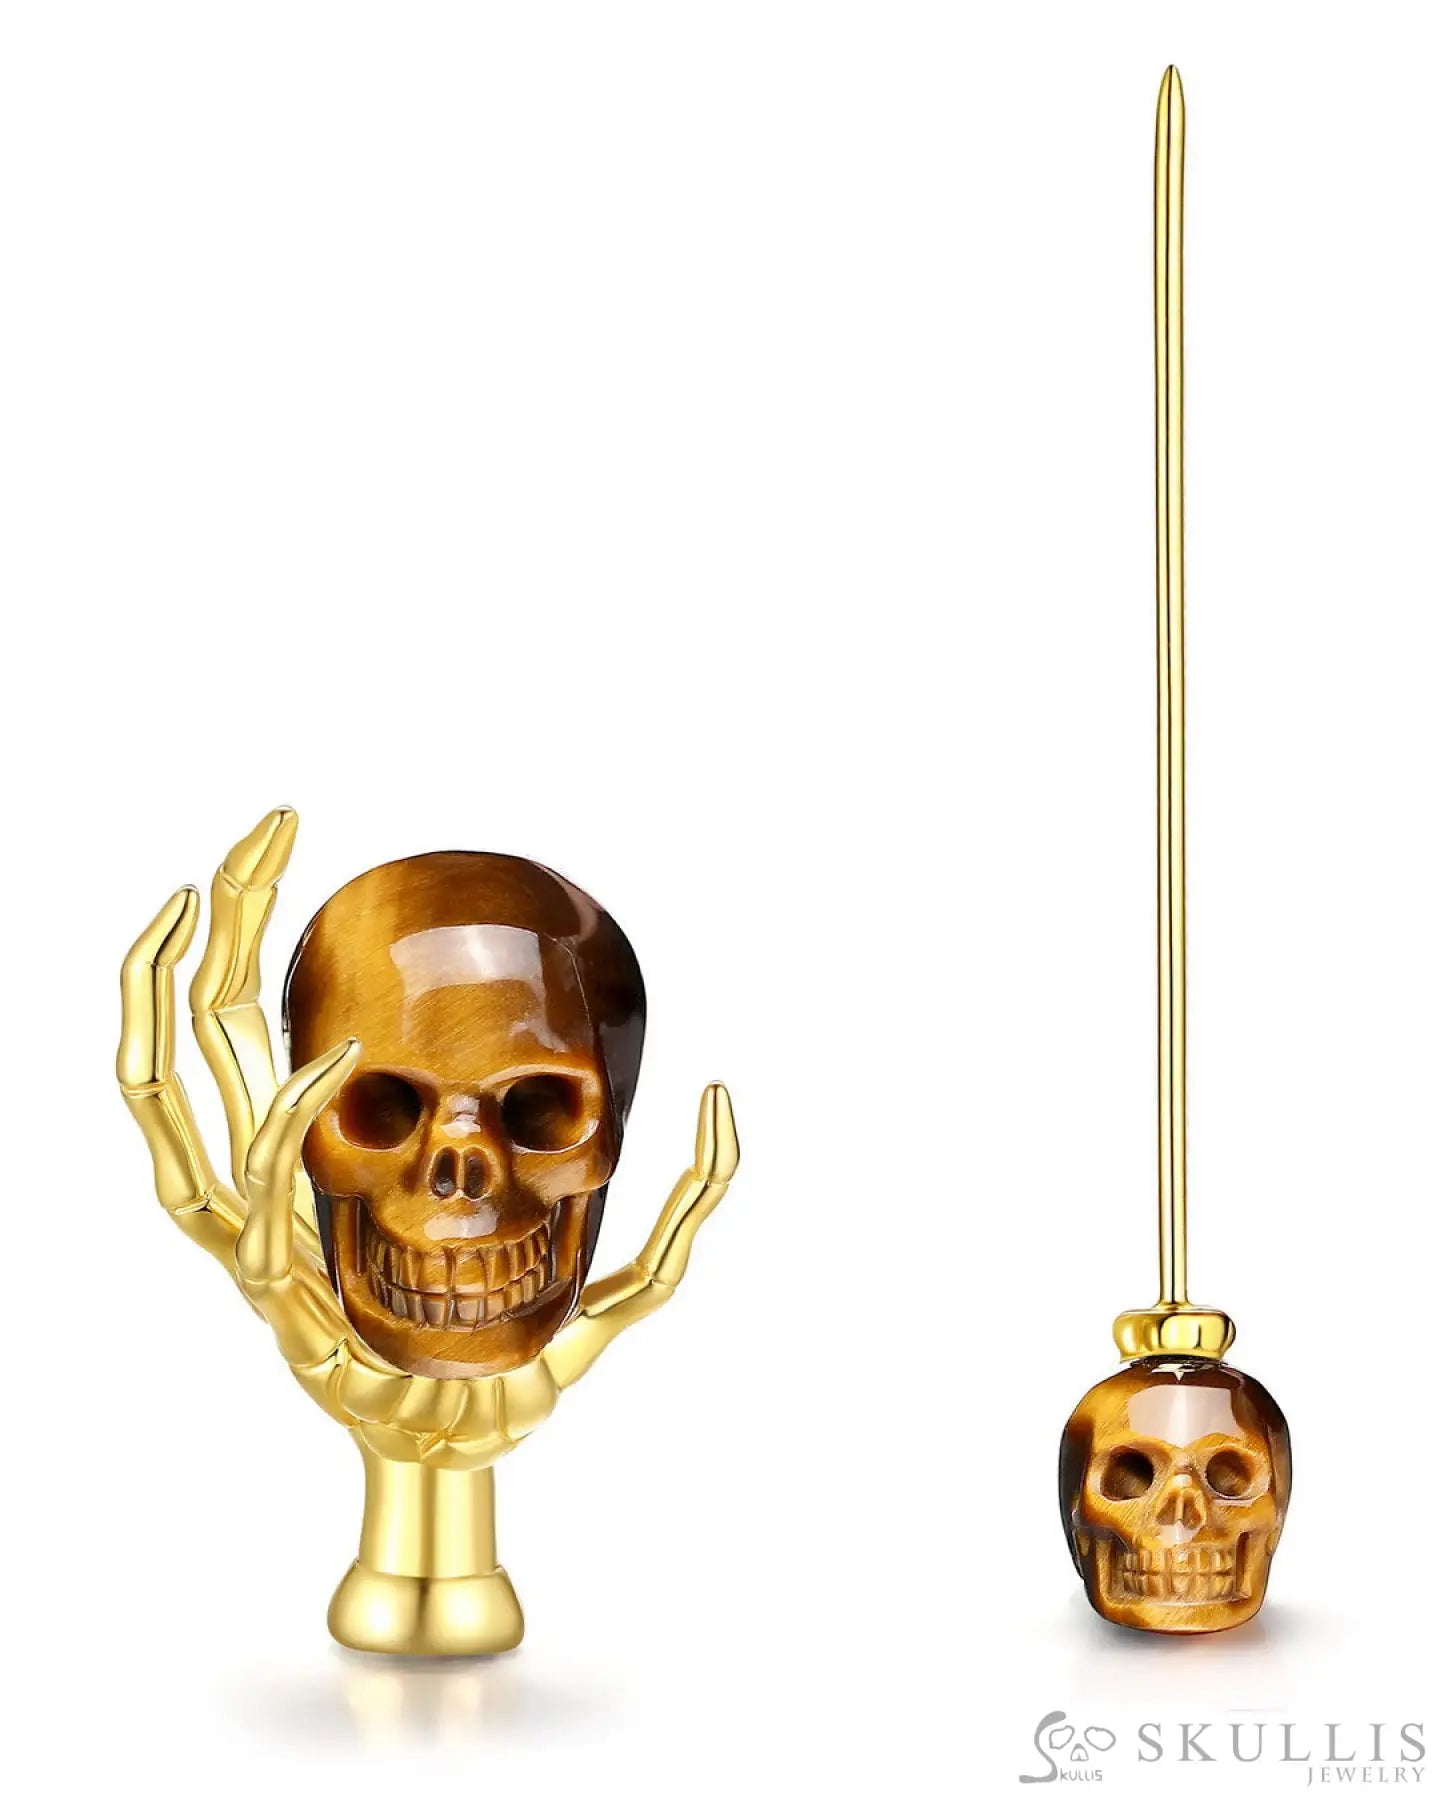 Gem Skull Brooch Of Gold Tiger’s Eye Carved Skull With Skeleton Hand In 18K Gold - Plated